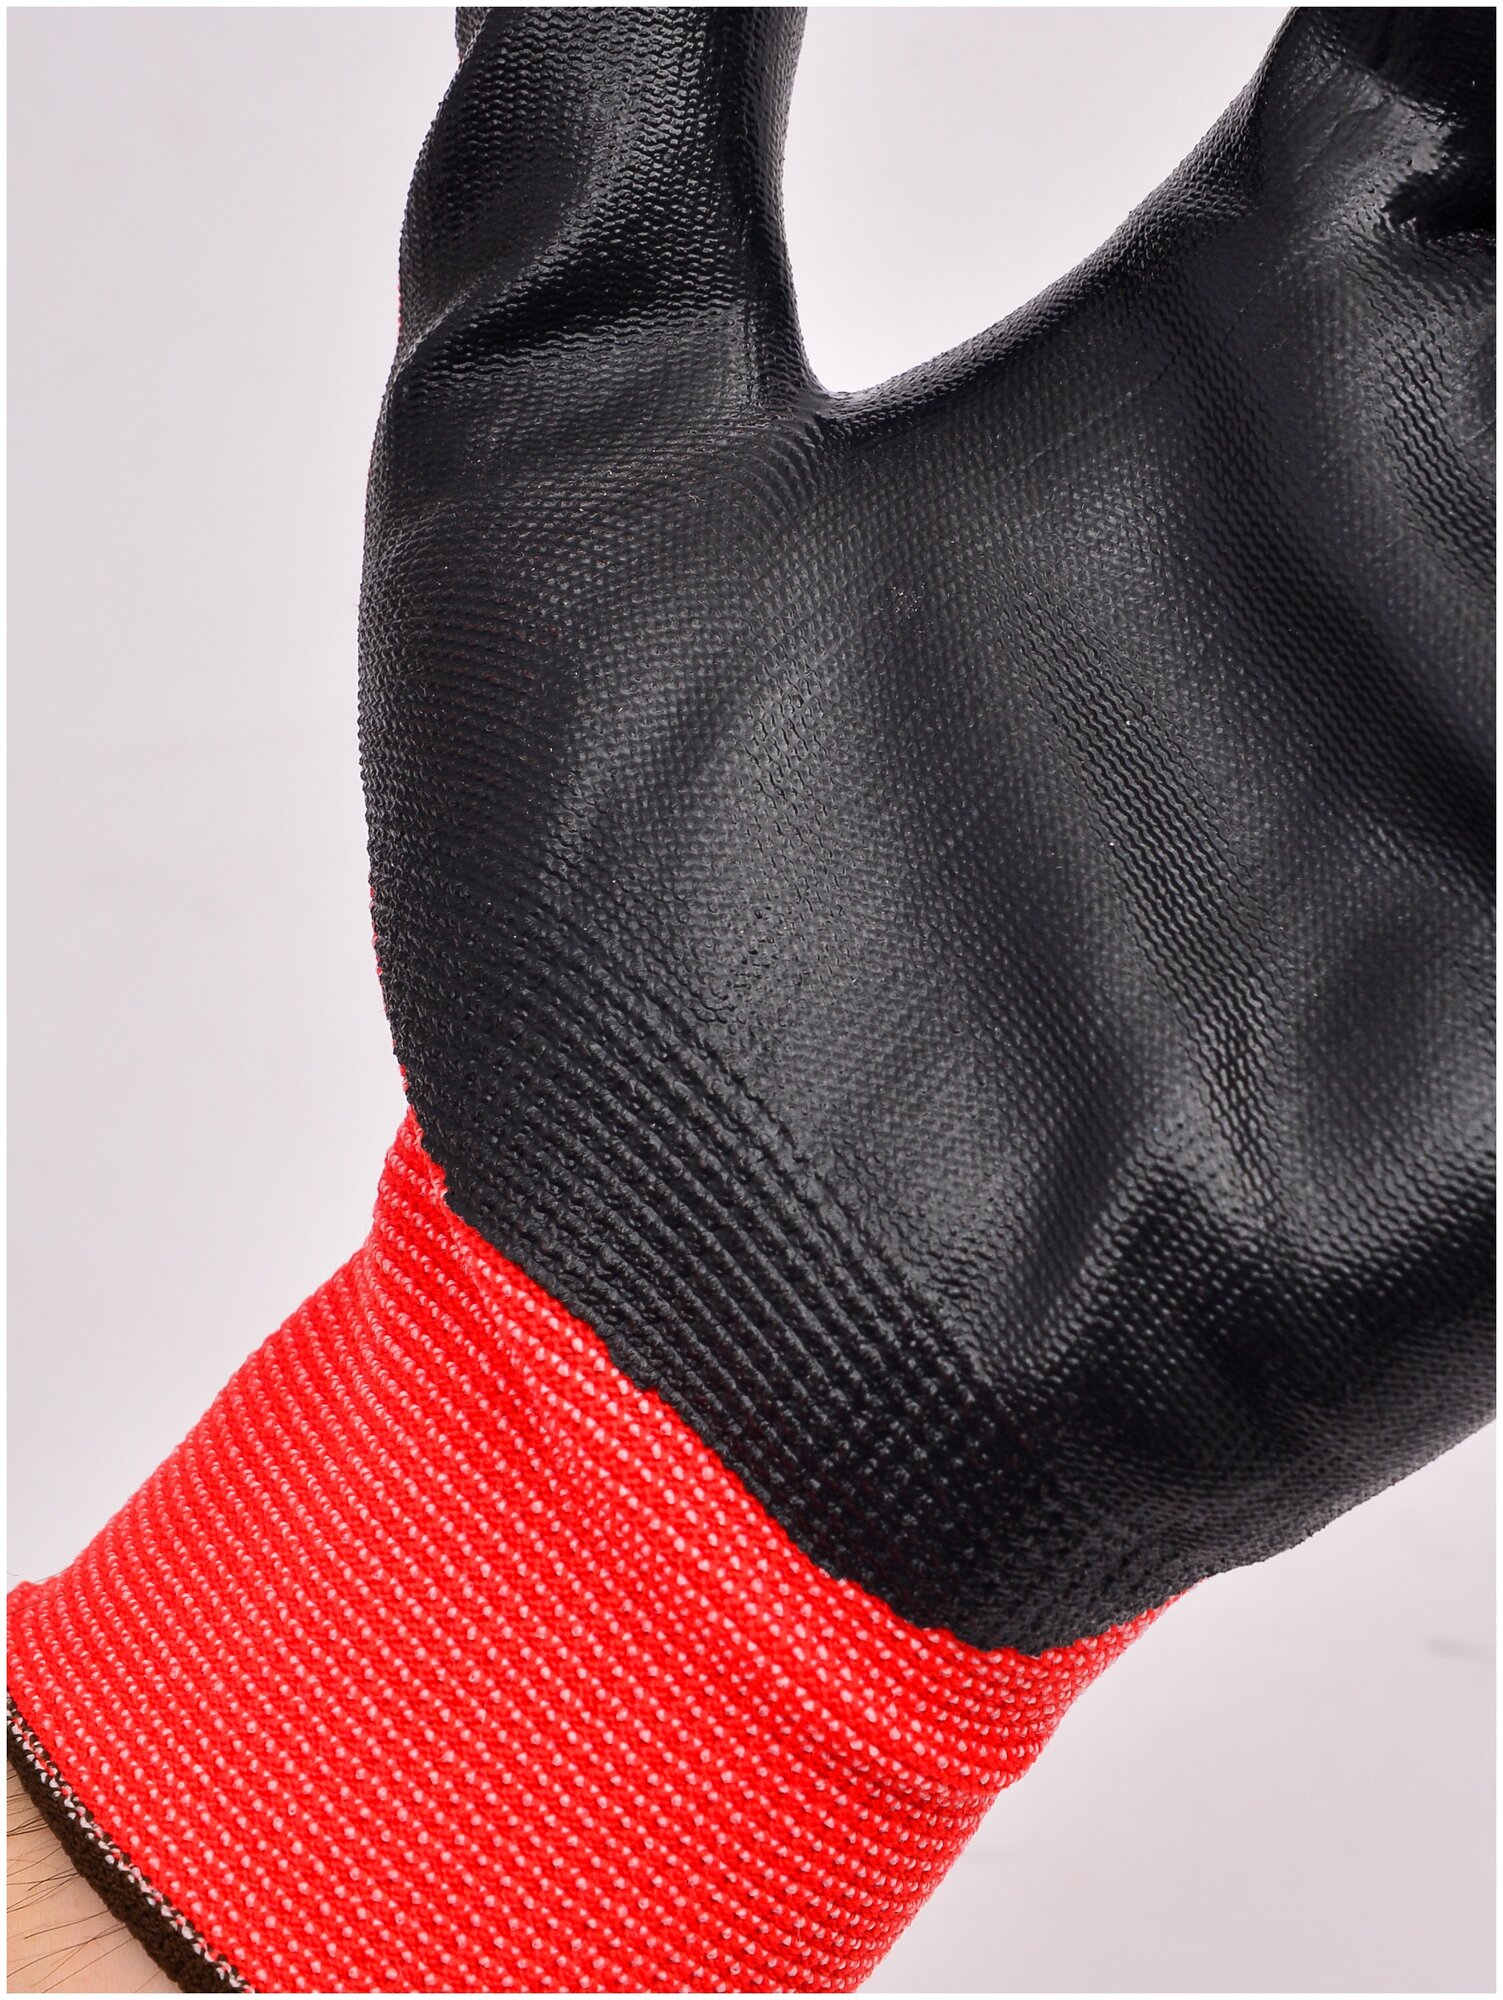 Перчатки нейлоновые с нитриловым обливом Люкс, садовые перчатки рабочие, красные, 5 пар